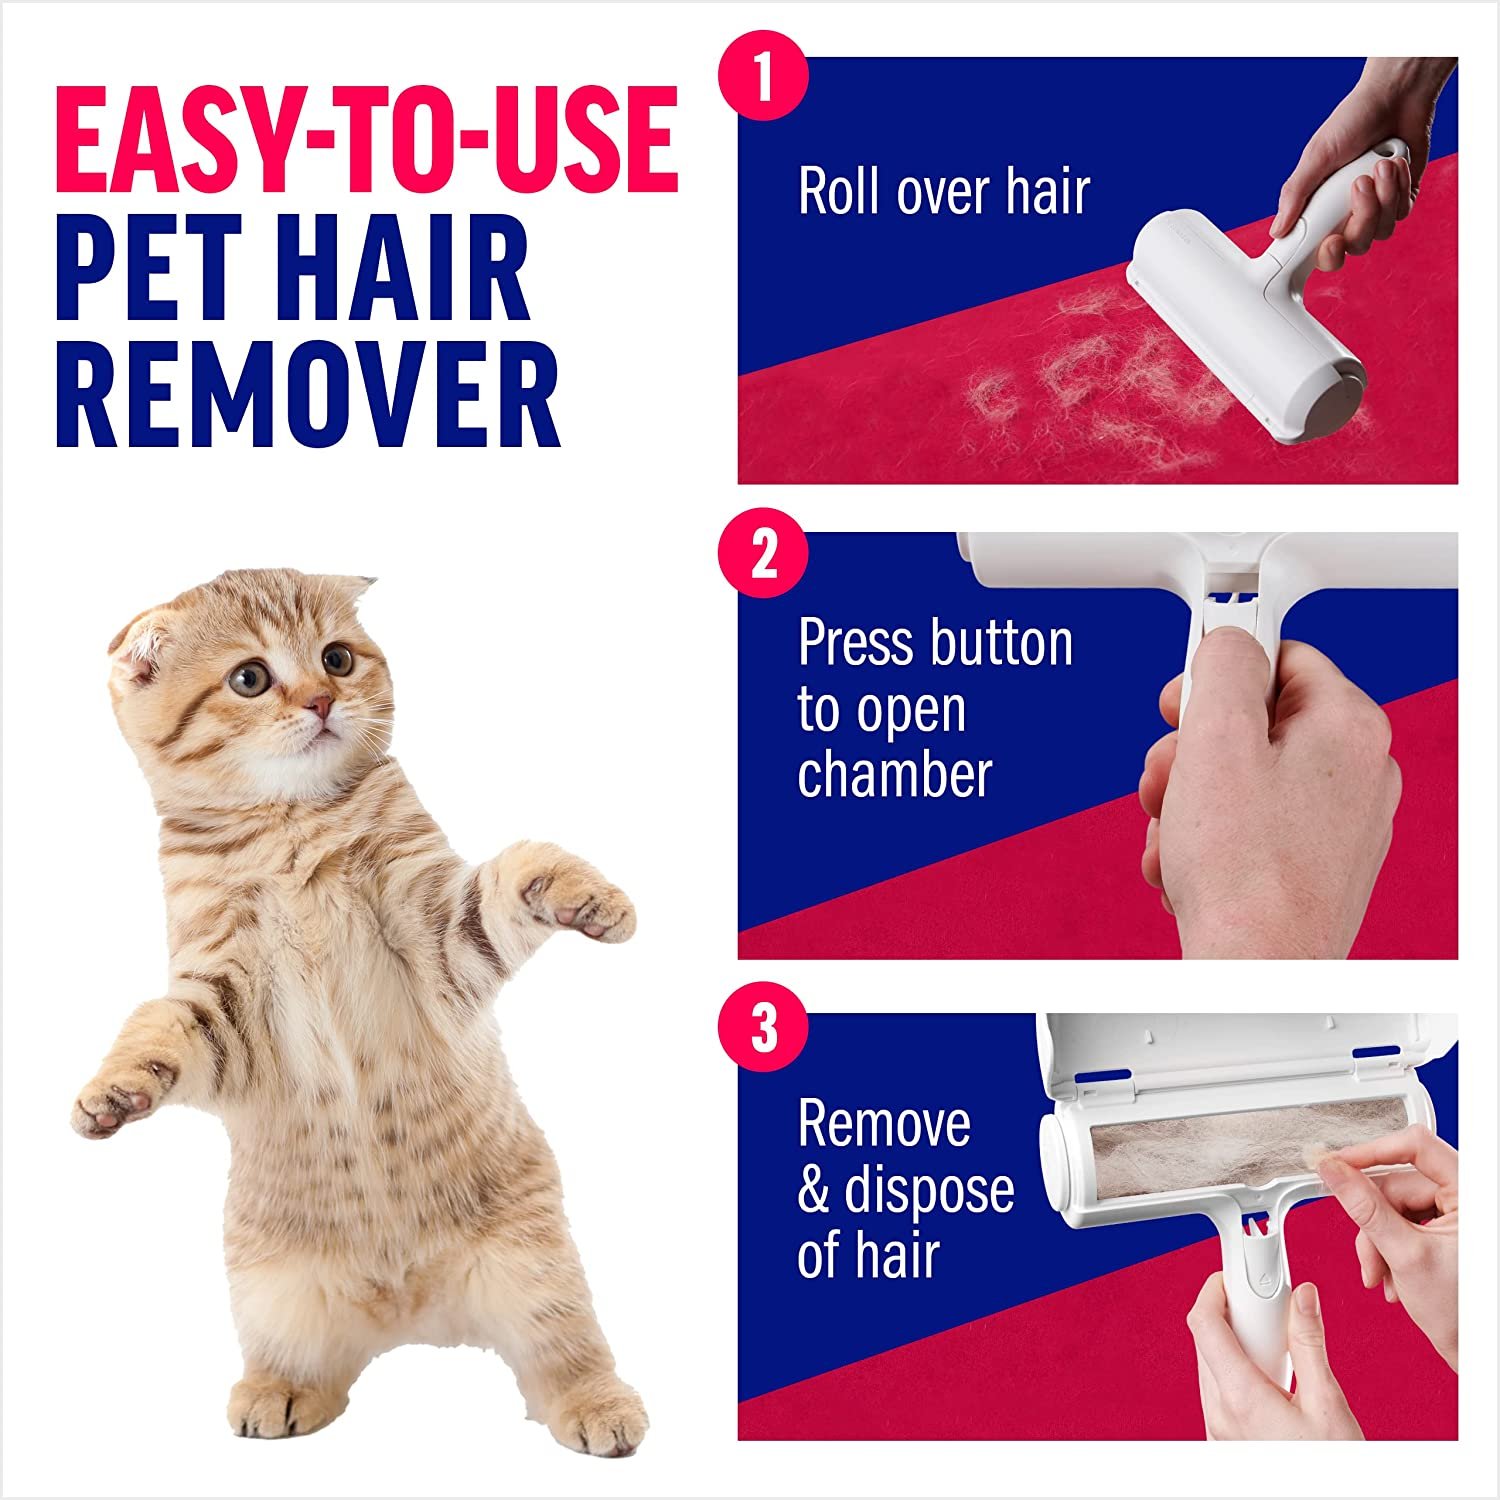 Pet Hair Remover6.jpg